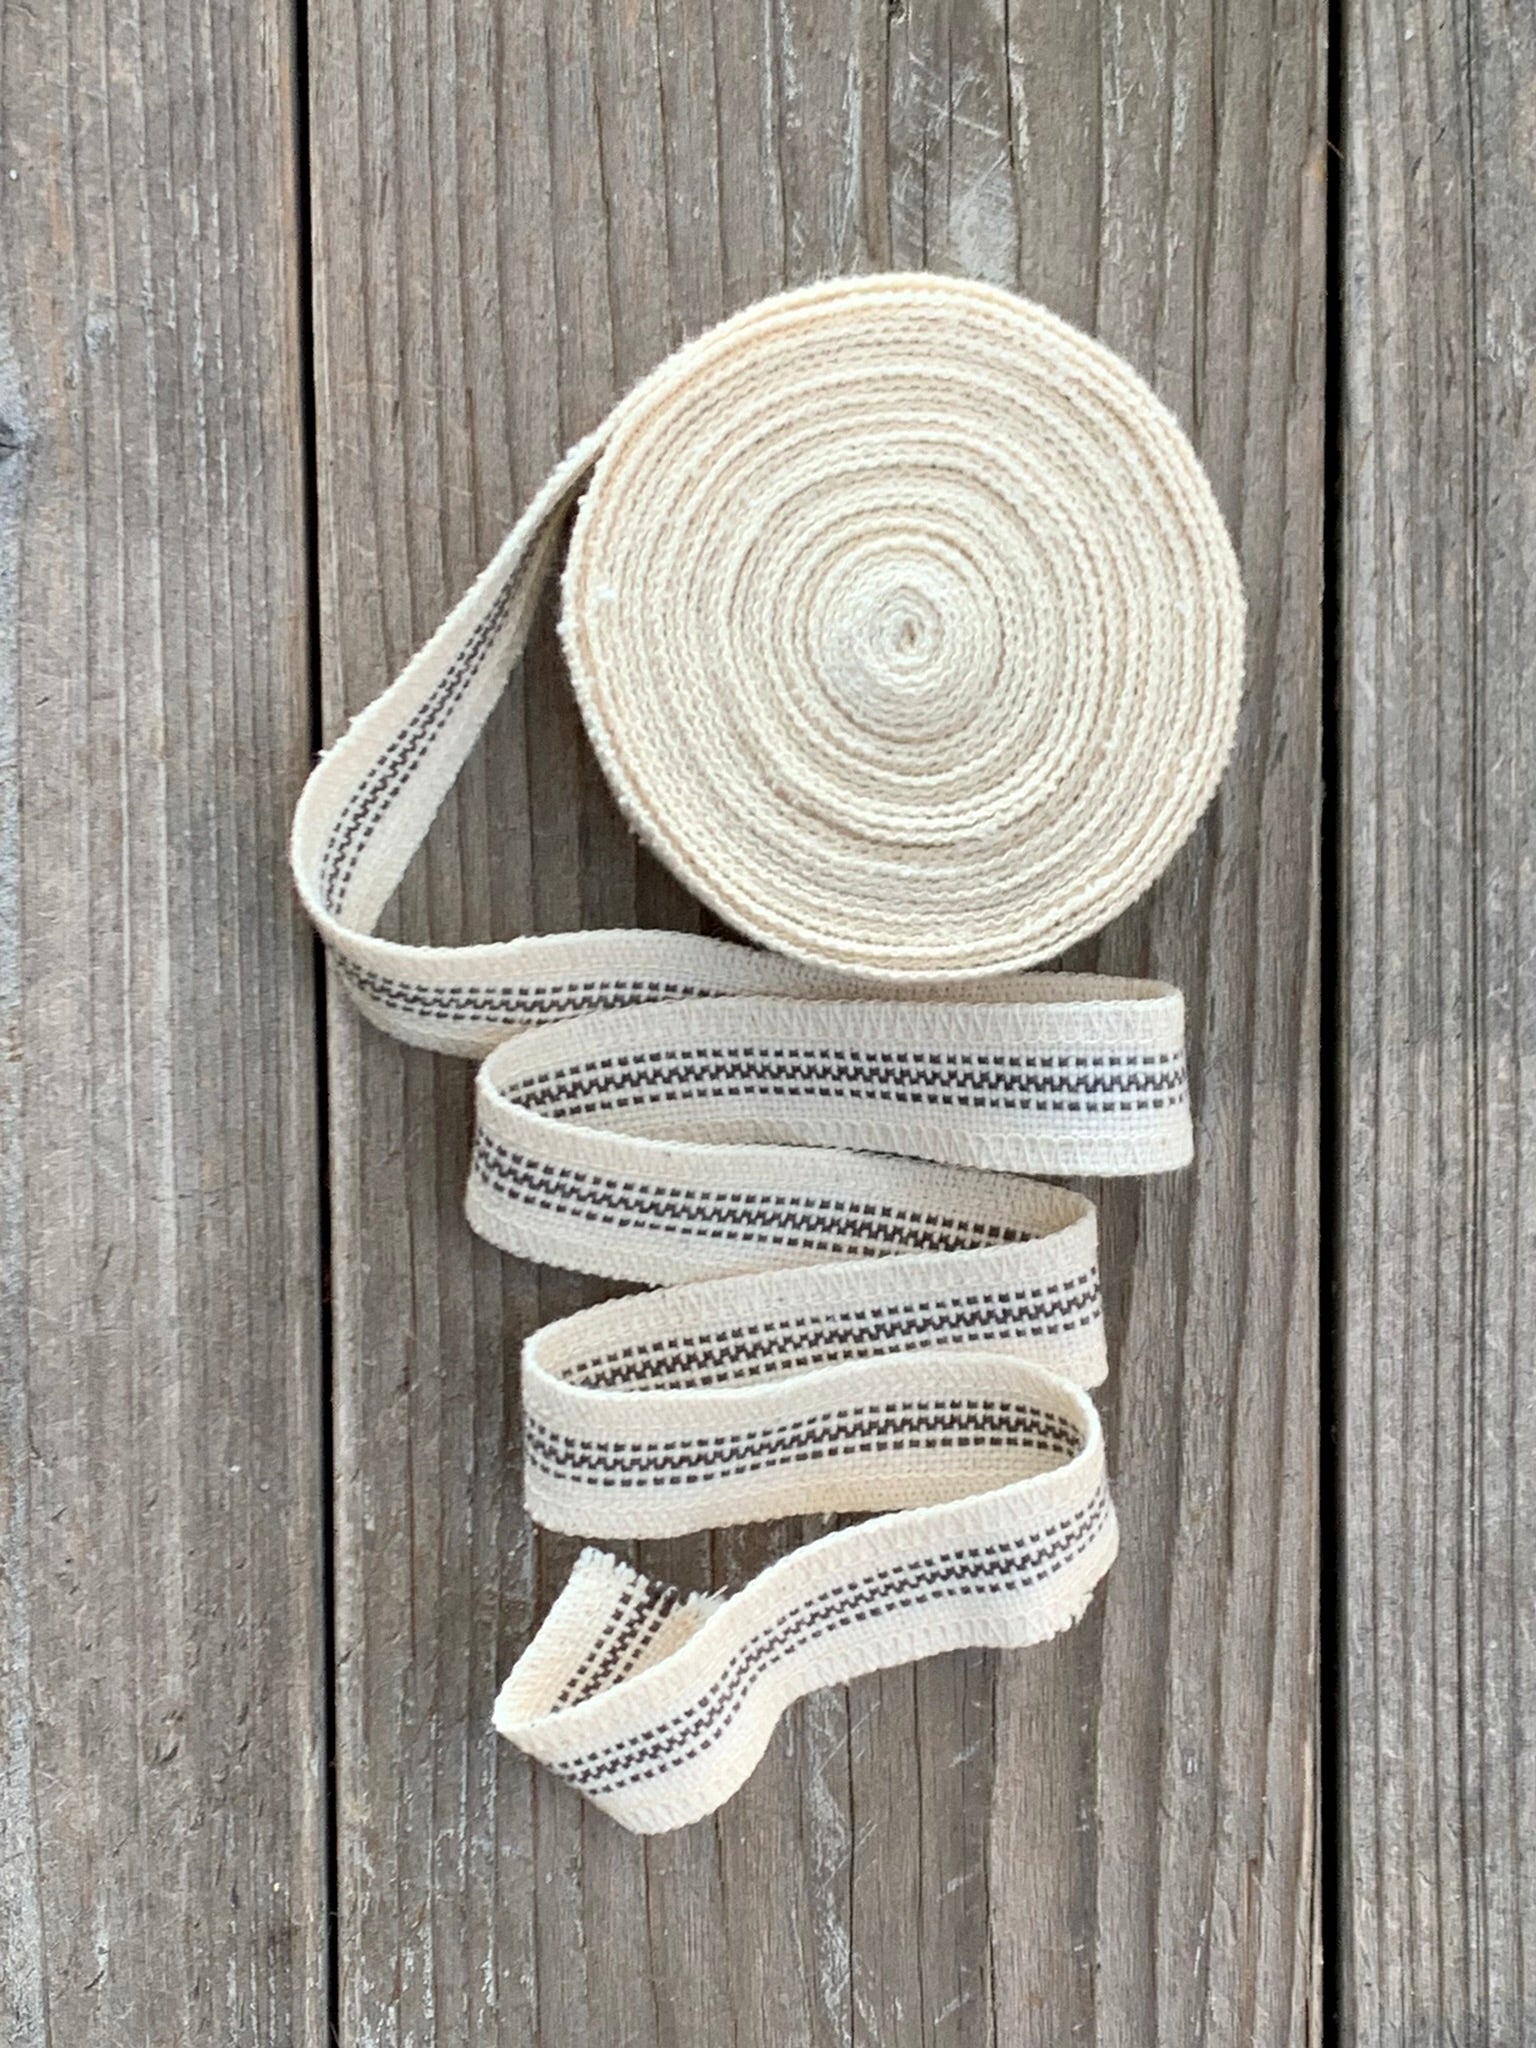 Grain Sack Ribbon - Gray and Cream Stripe - 1" Wide